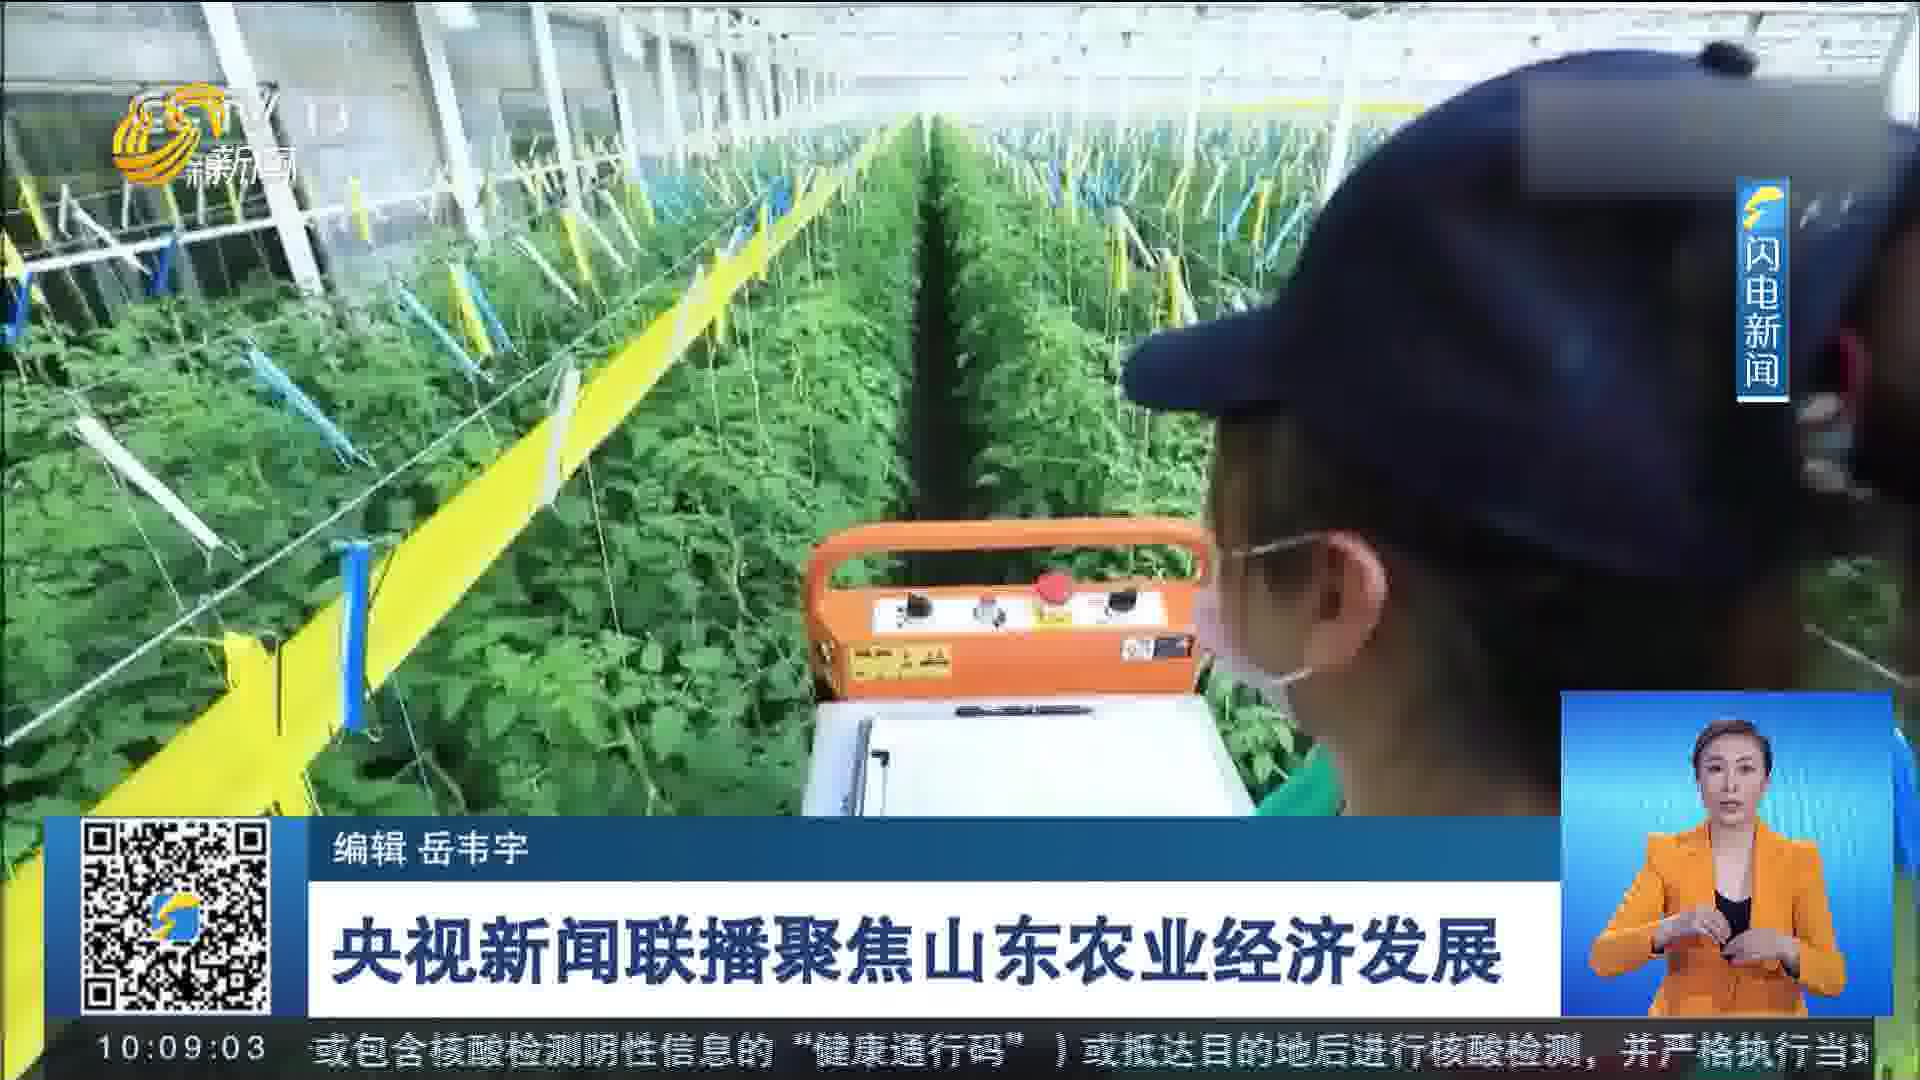 央视新闻联播聚焦山东农业经济发展